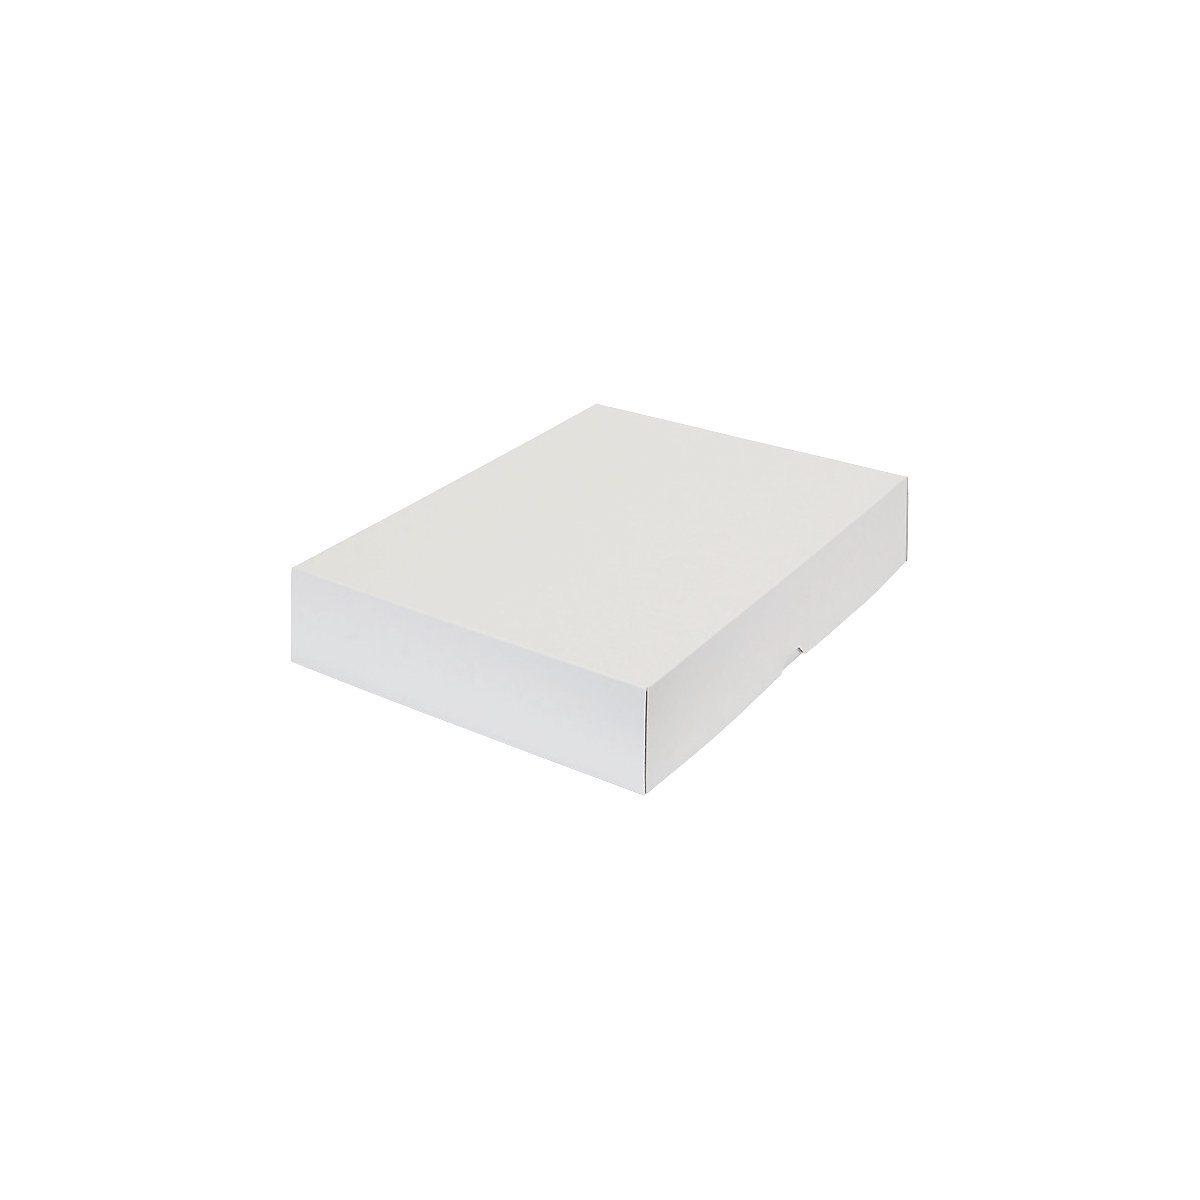 Stülpdeckelkarton, zweiteilig, Innenmaße 435 x 315 x 80 mm, A3, weiß, ab 12 Stk-9